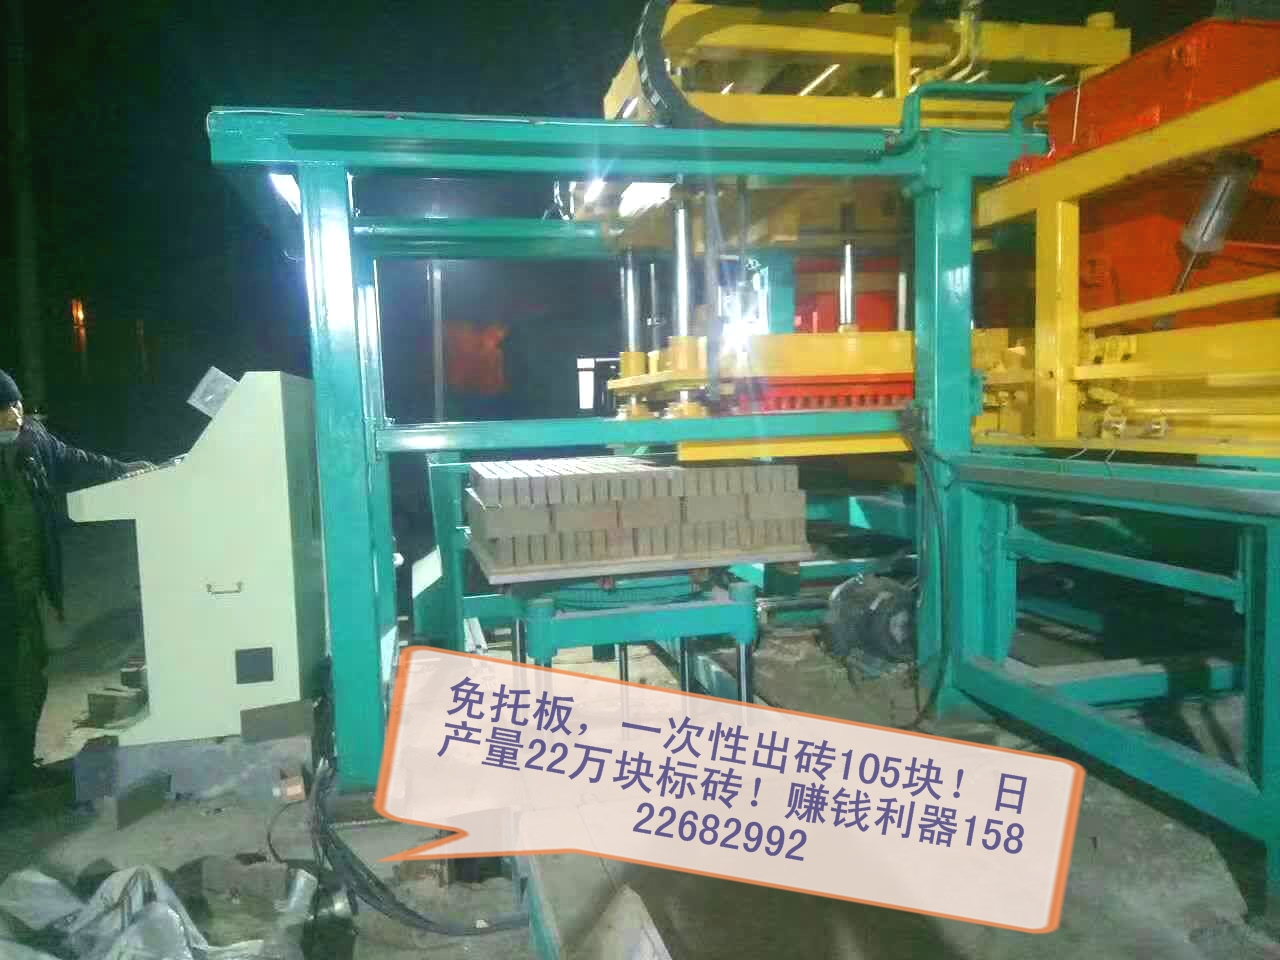 安徽淮南建丰步道砖机设备质量杠杠地棒/环保型砖机价格